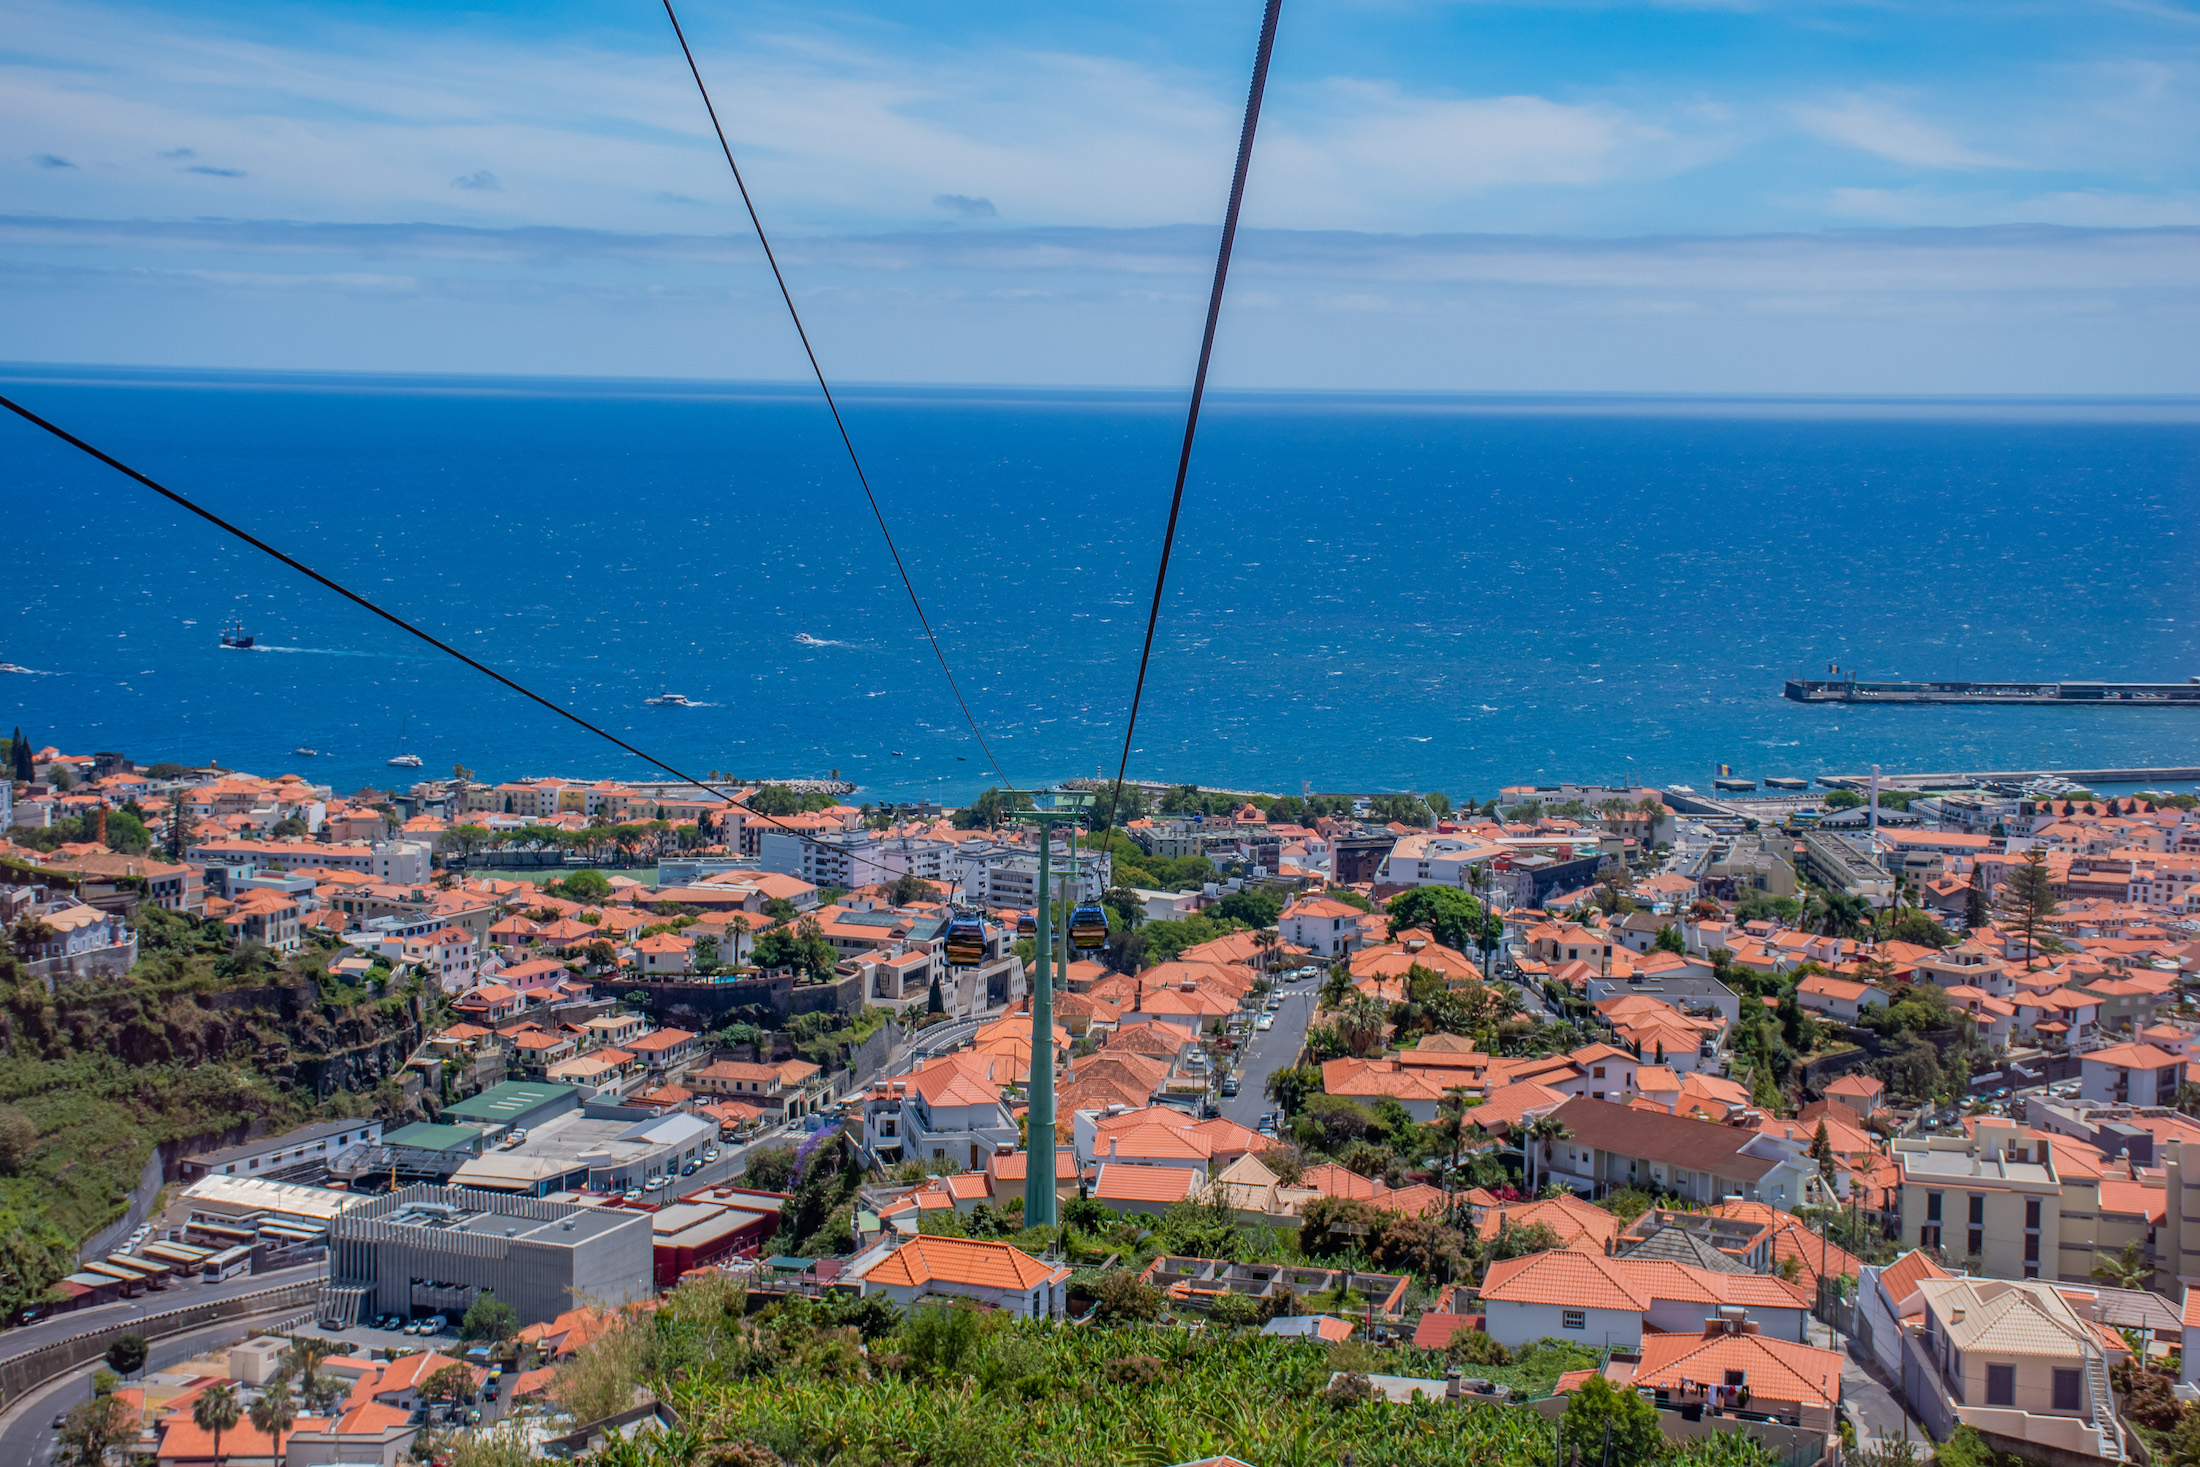 Met de kabelbaan naar Monte Madeira = 15 minuten genieten van het prachtige uitzicht